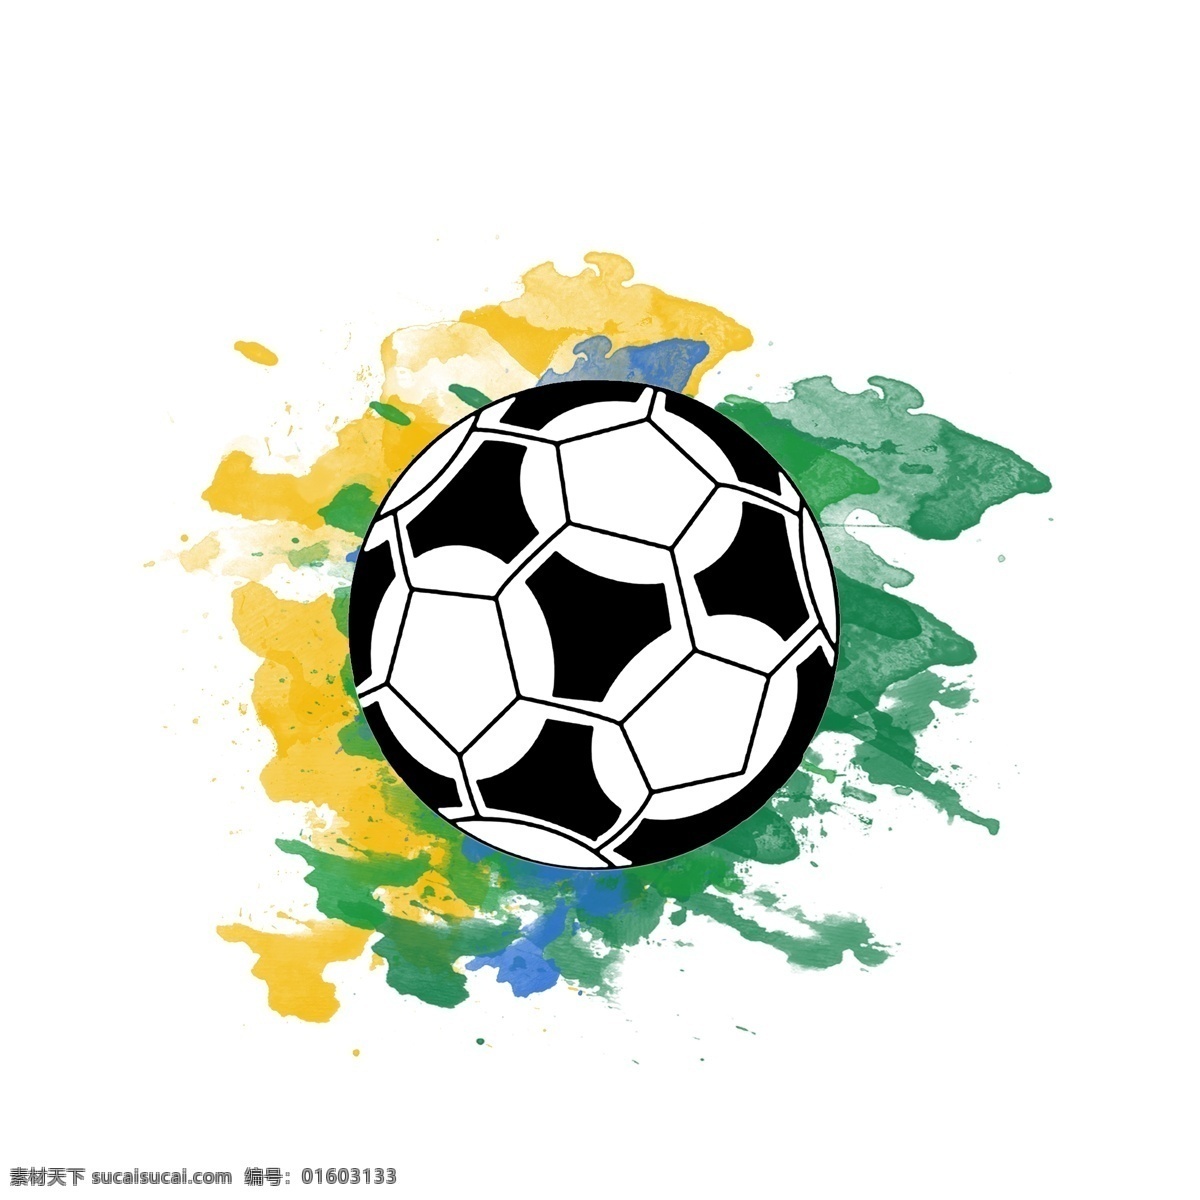 水彩 足球 黄绿 蓝 炫 酷 炫酷 体育运动 足球比赛 黄绿蓝 体育比赛 炫彩的世界杯 炫彩足球 炫酷世界杯 世界杯设计